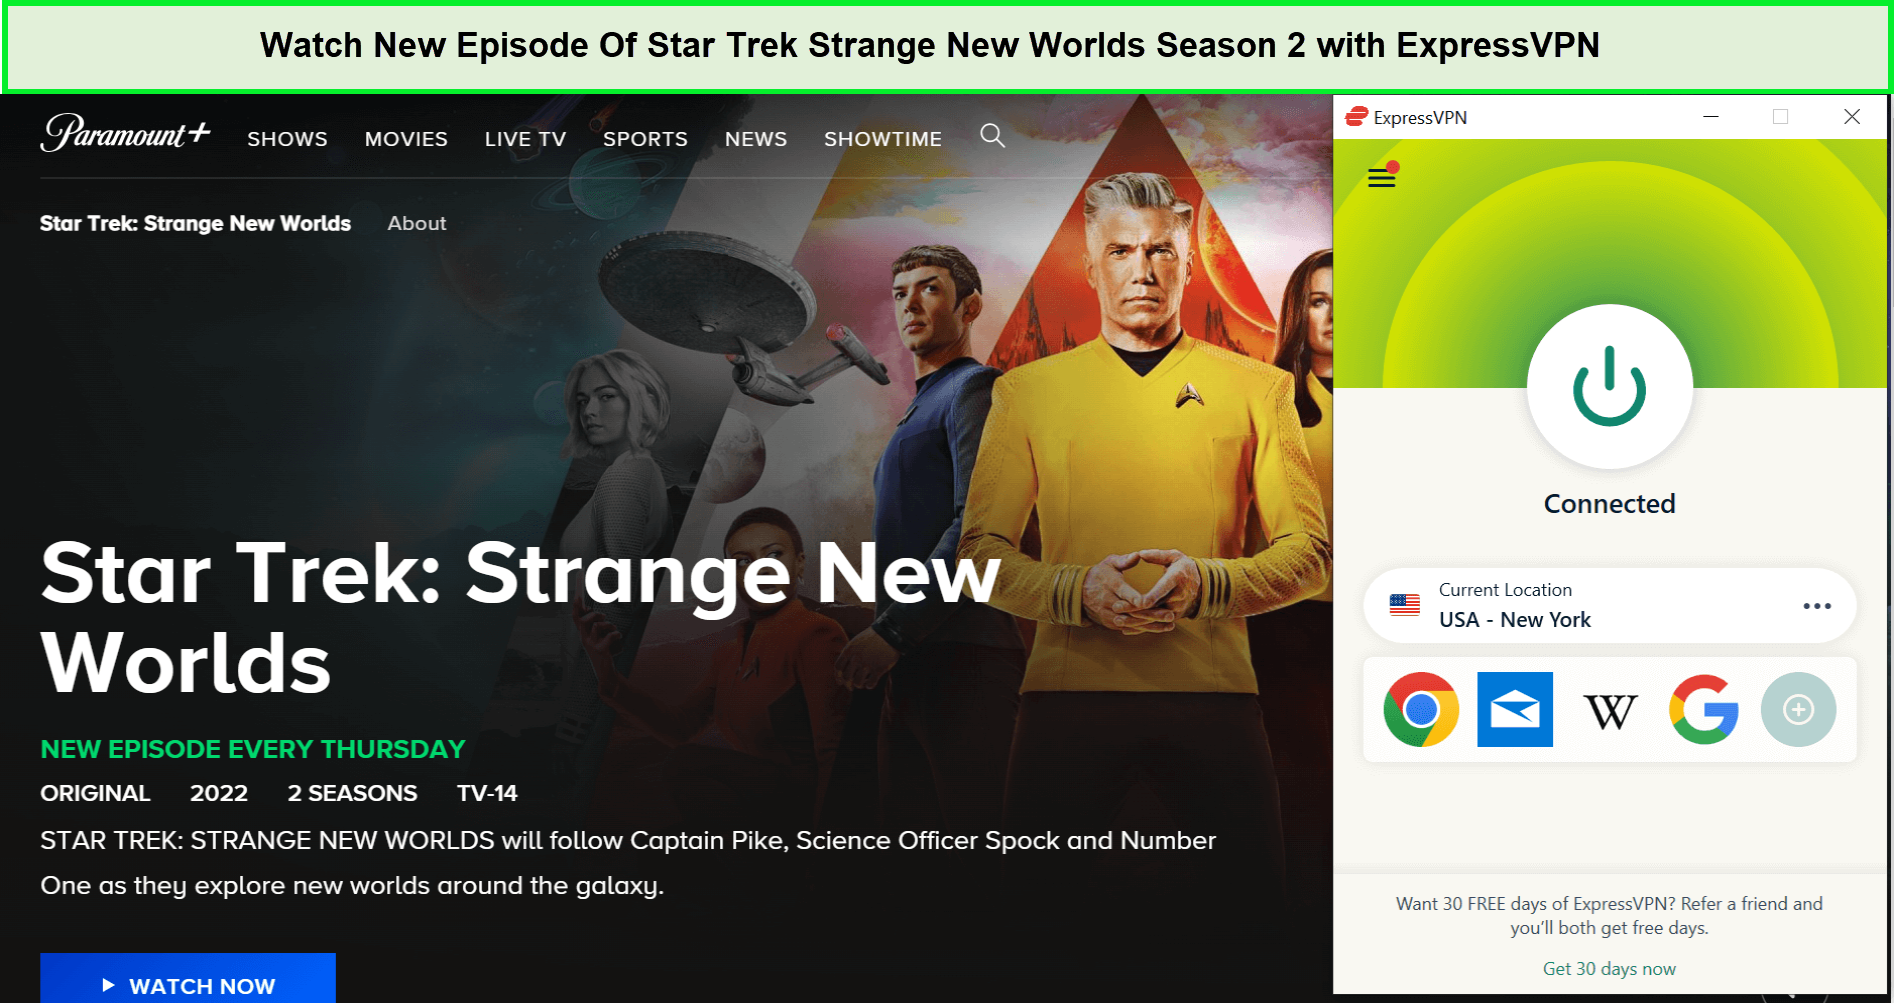 Watch-New-Episode-Of-Star-Trek-Strange-New-Worlds-Season-2-in-India-with-ExpressVPN